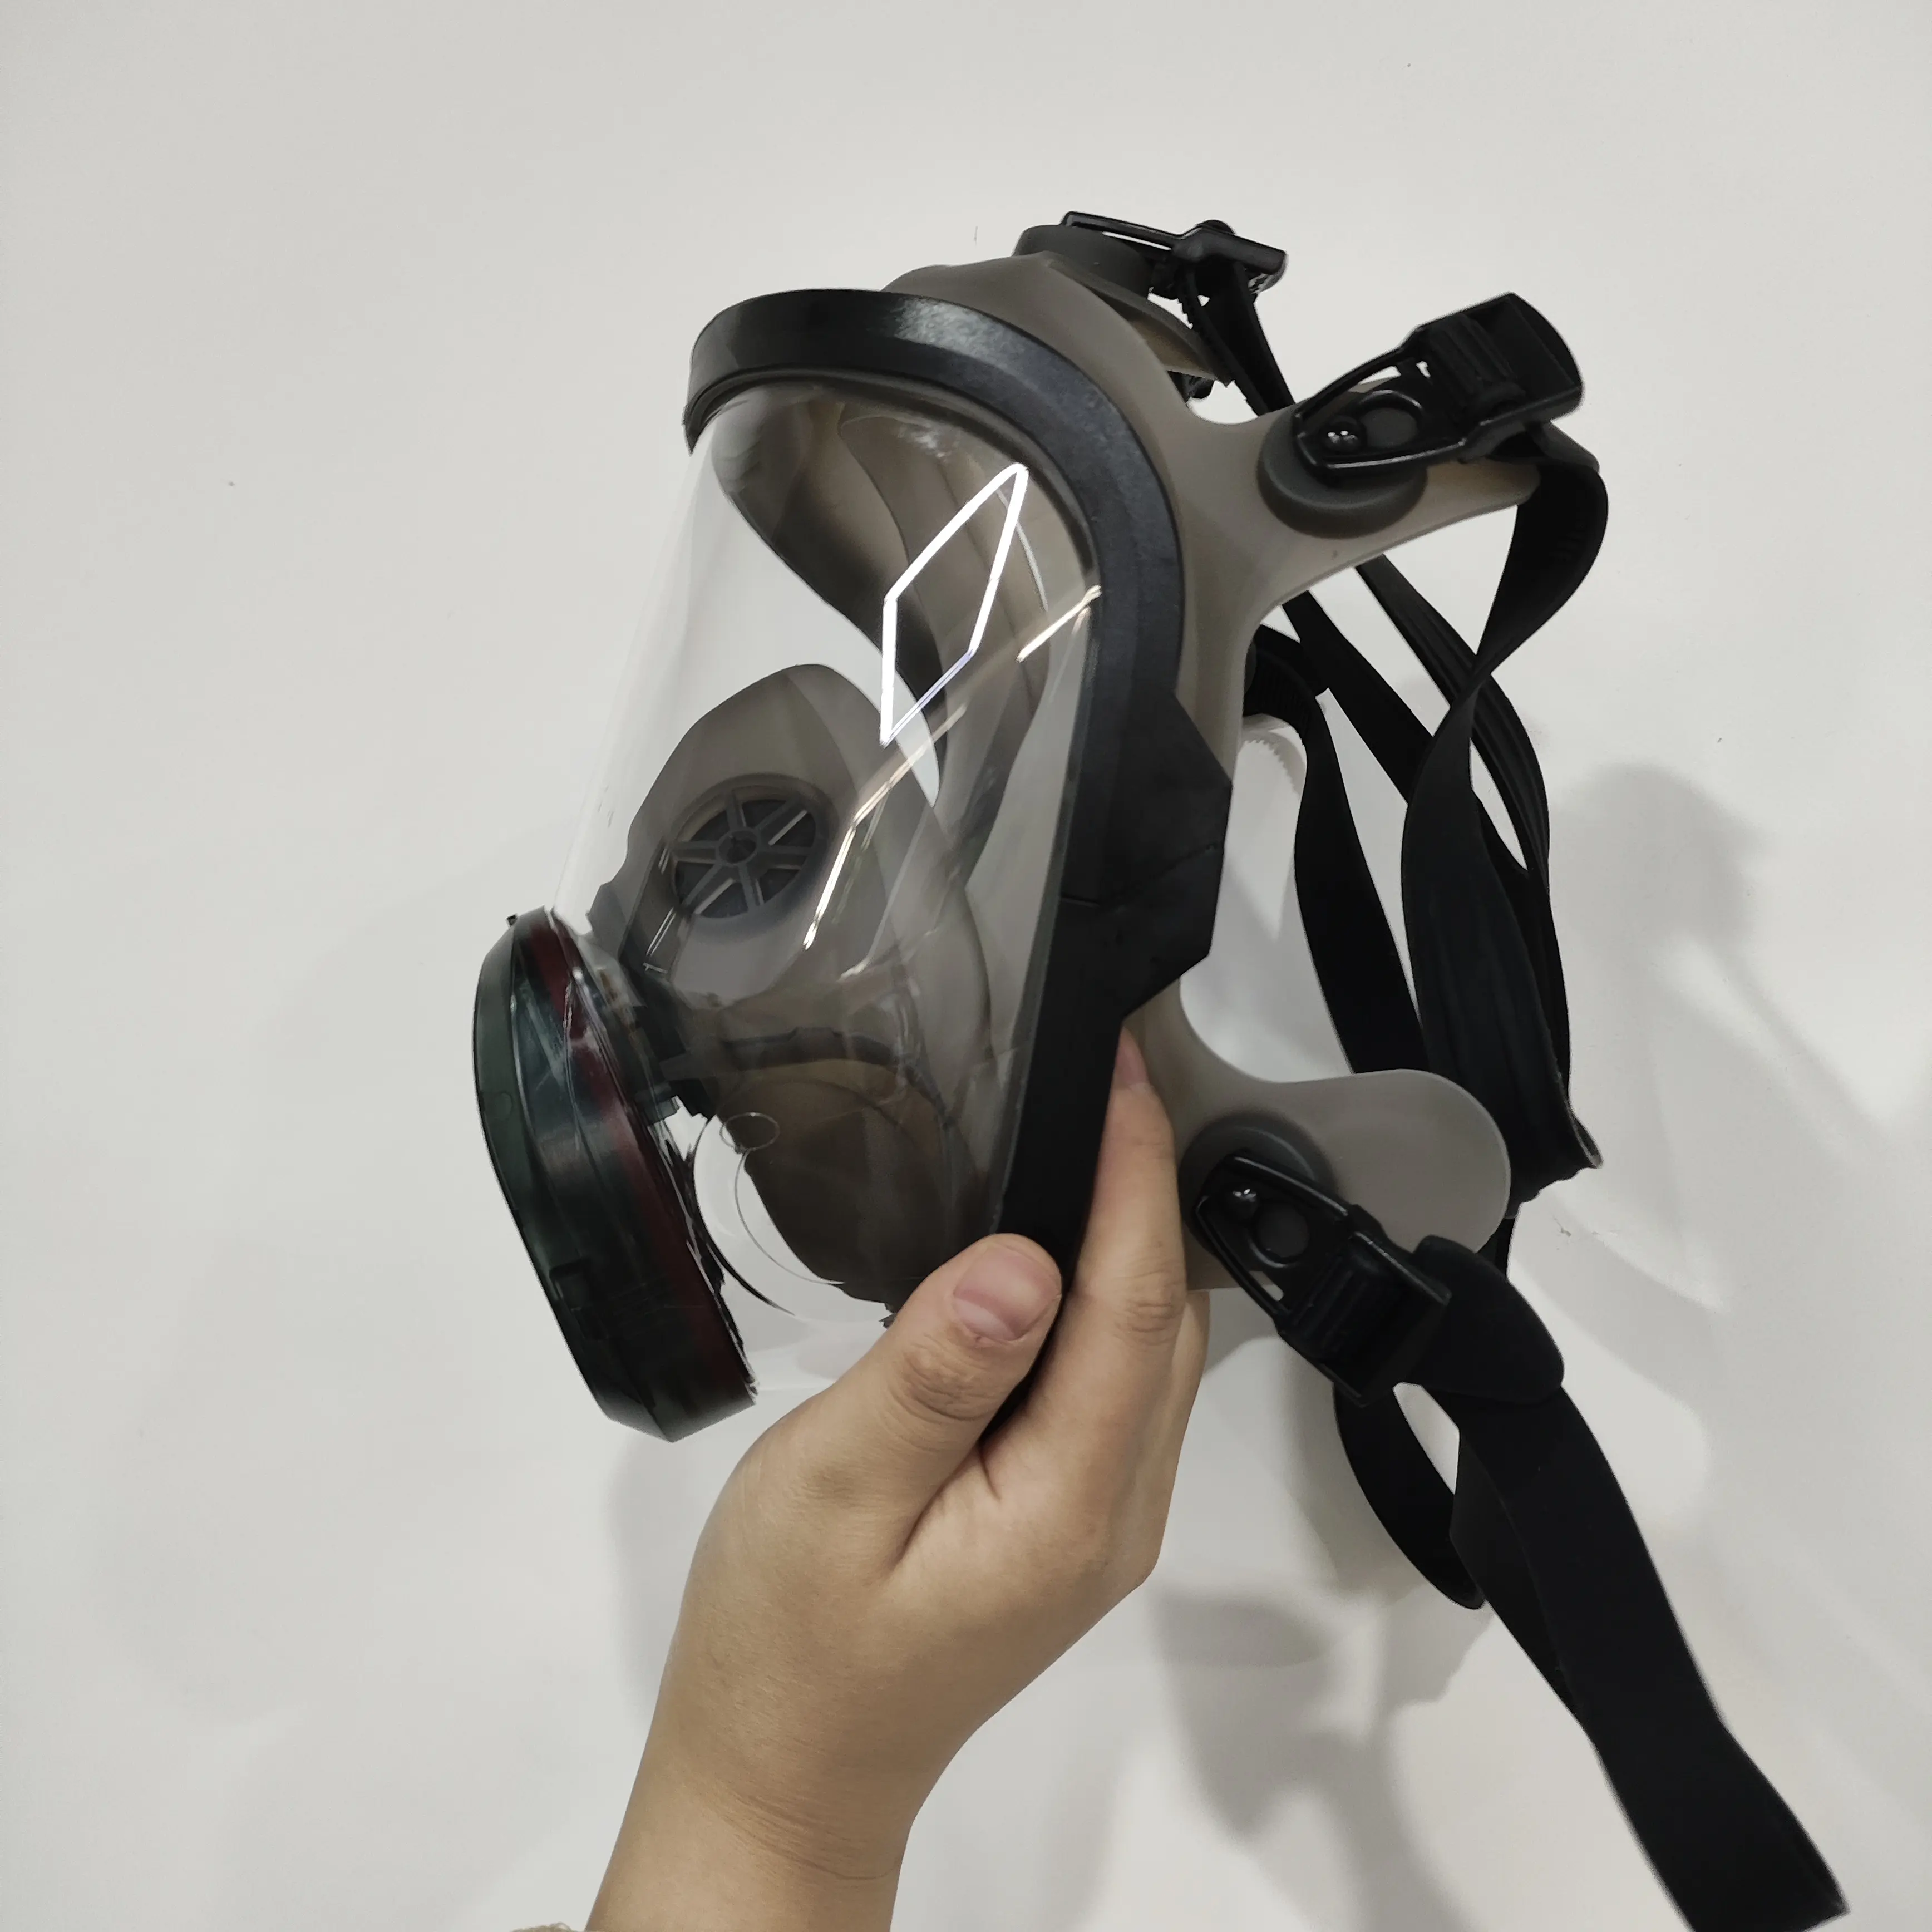 Hochwertige Silikon-Ganzmaske für das ganze Gesicht Atmungsschutz RD40 mm Schnittstelle